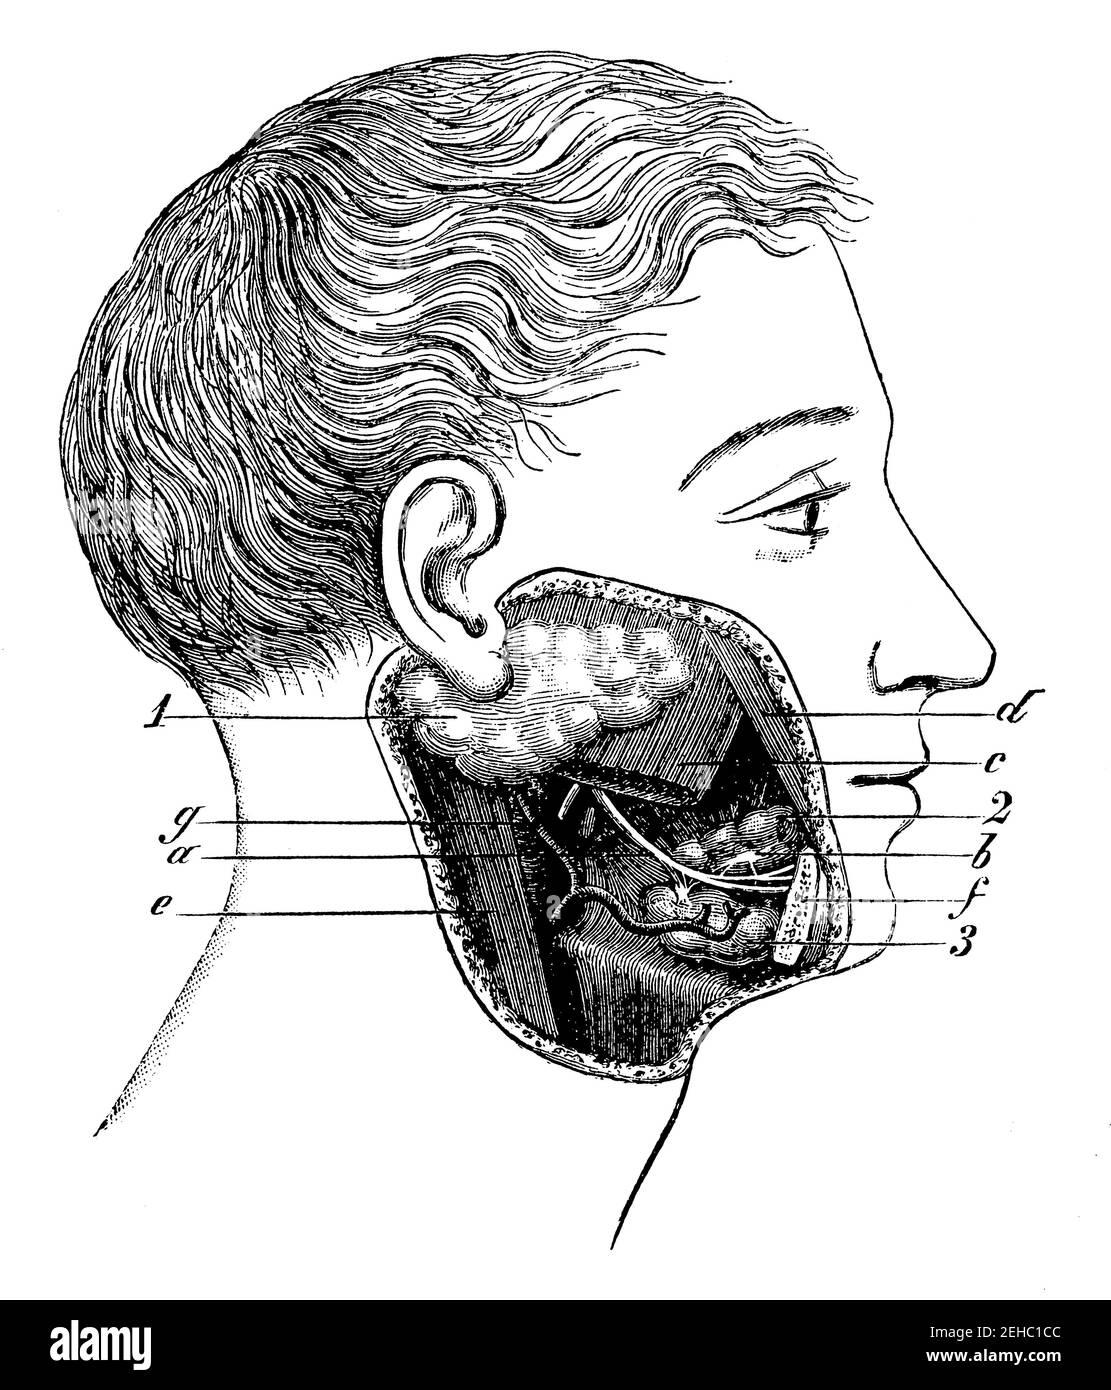 Glande salivaire. Illustration du 19e siècle. Allemagne. Arrière-plan blanc. Banque D'Images